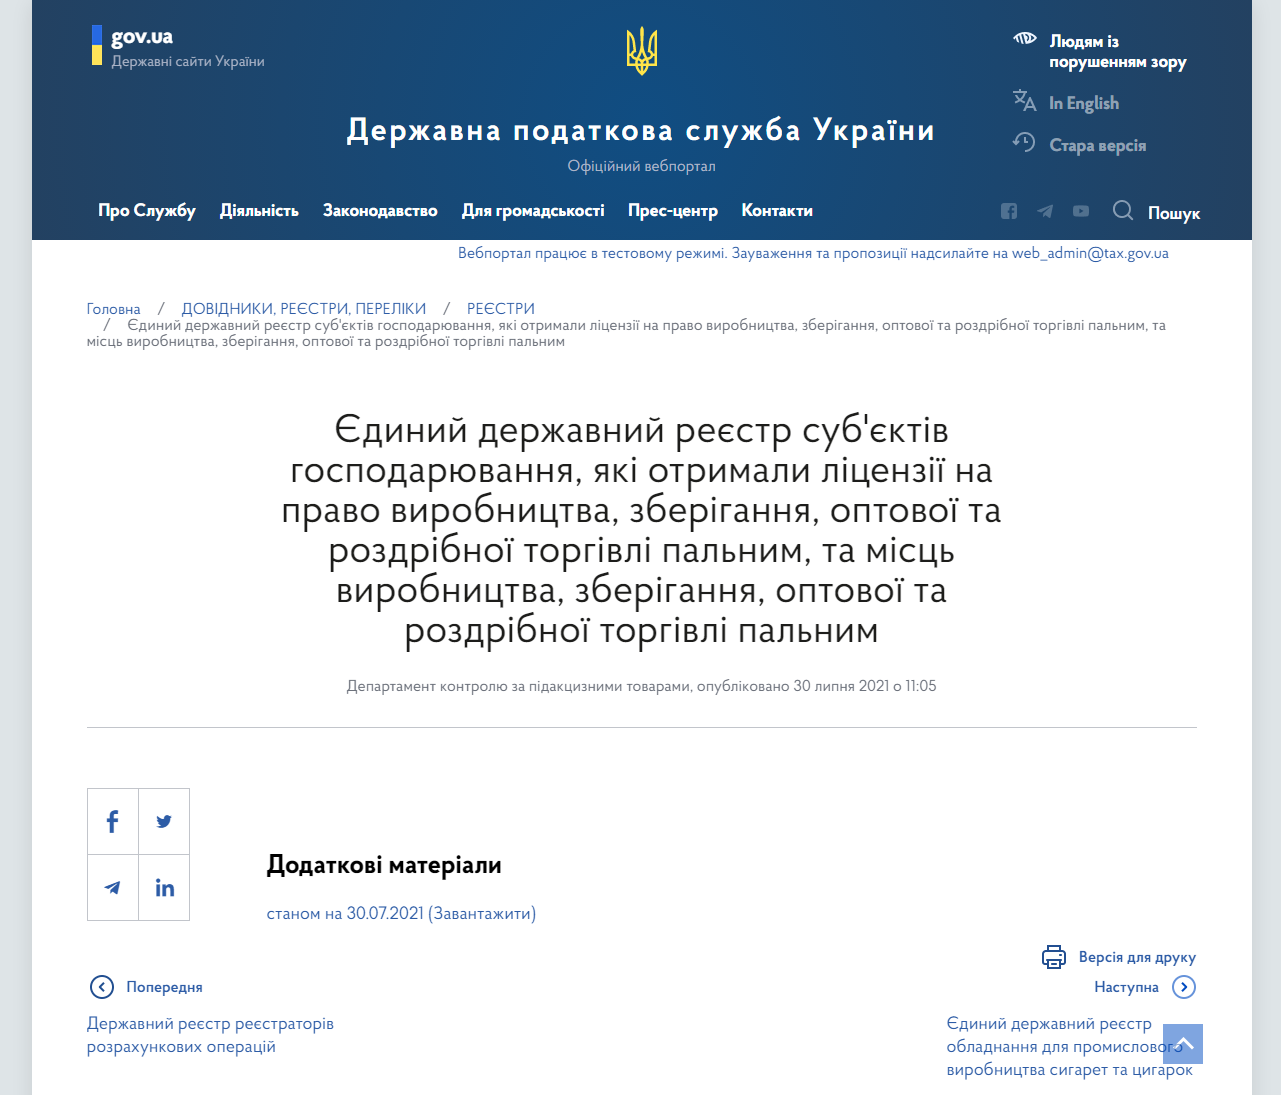 https://tax.gov.ua/dovidniki--reestri--perelik/reestri/383525.html